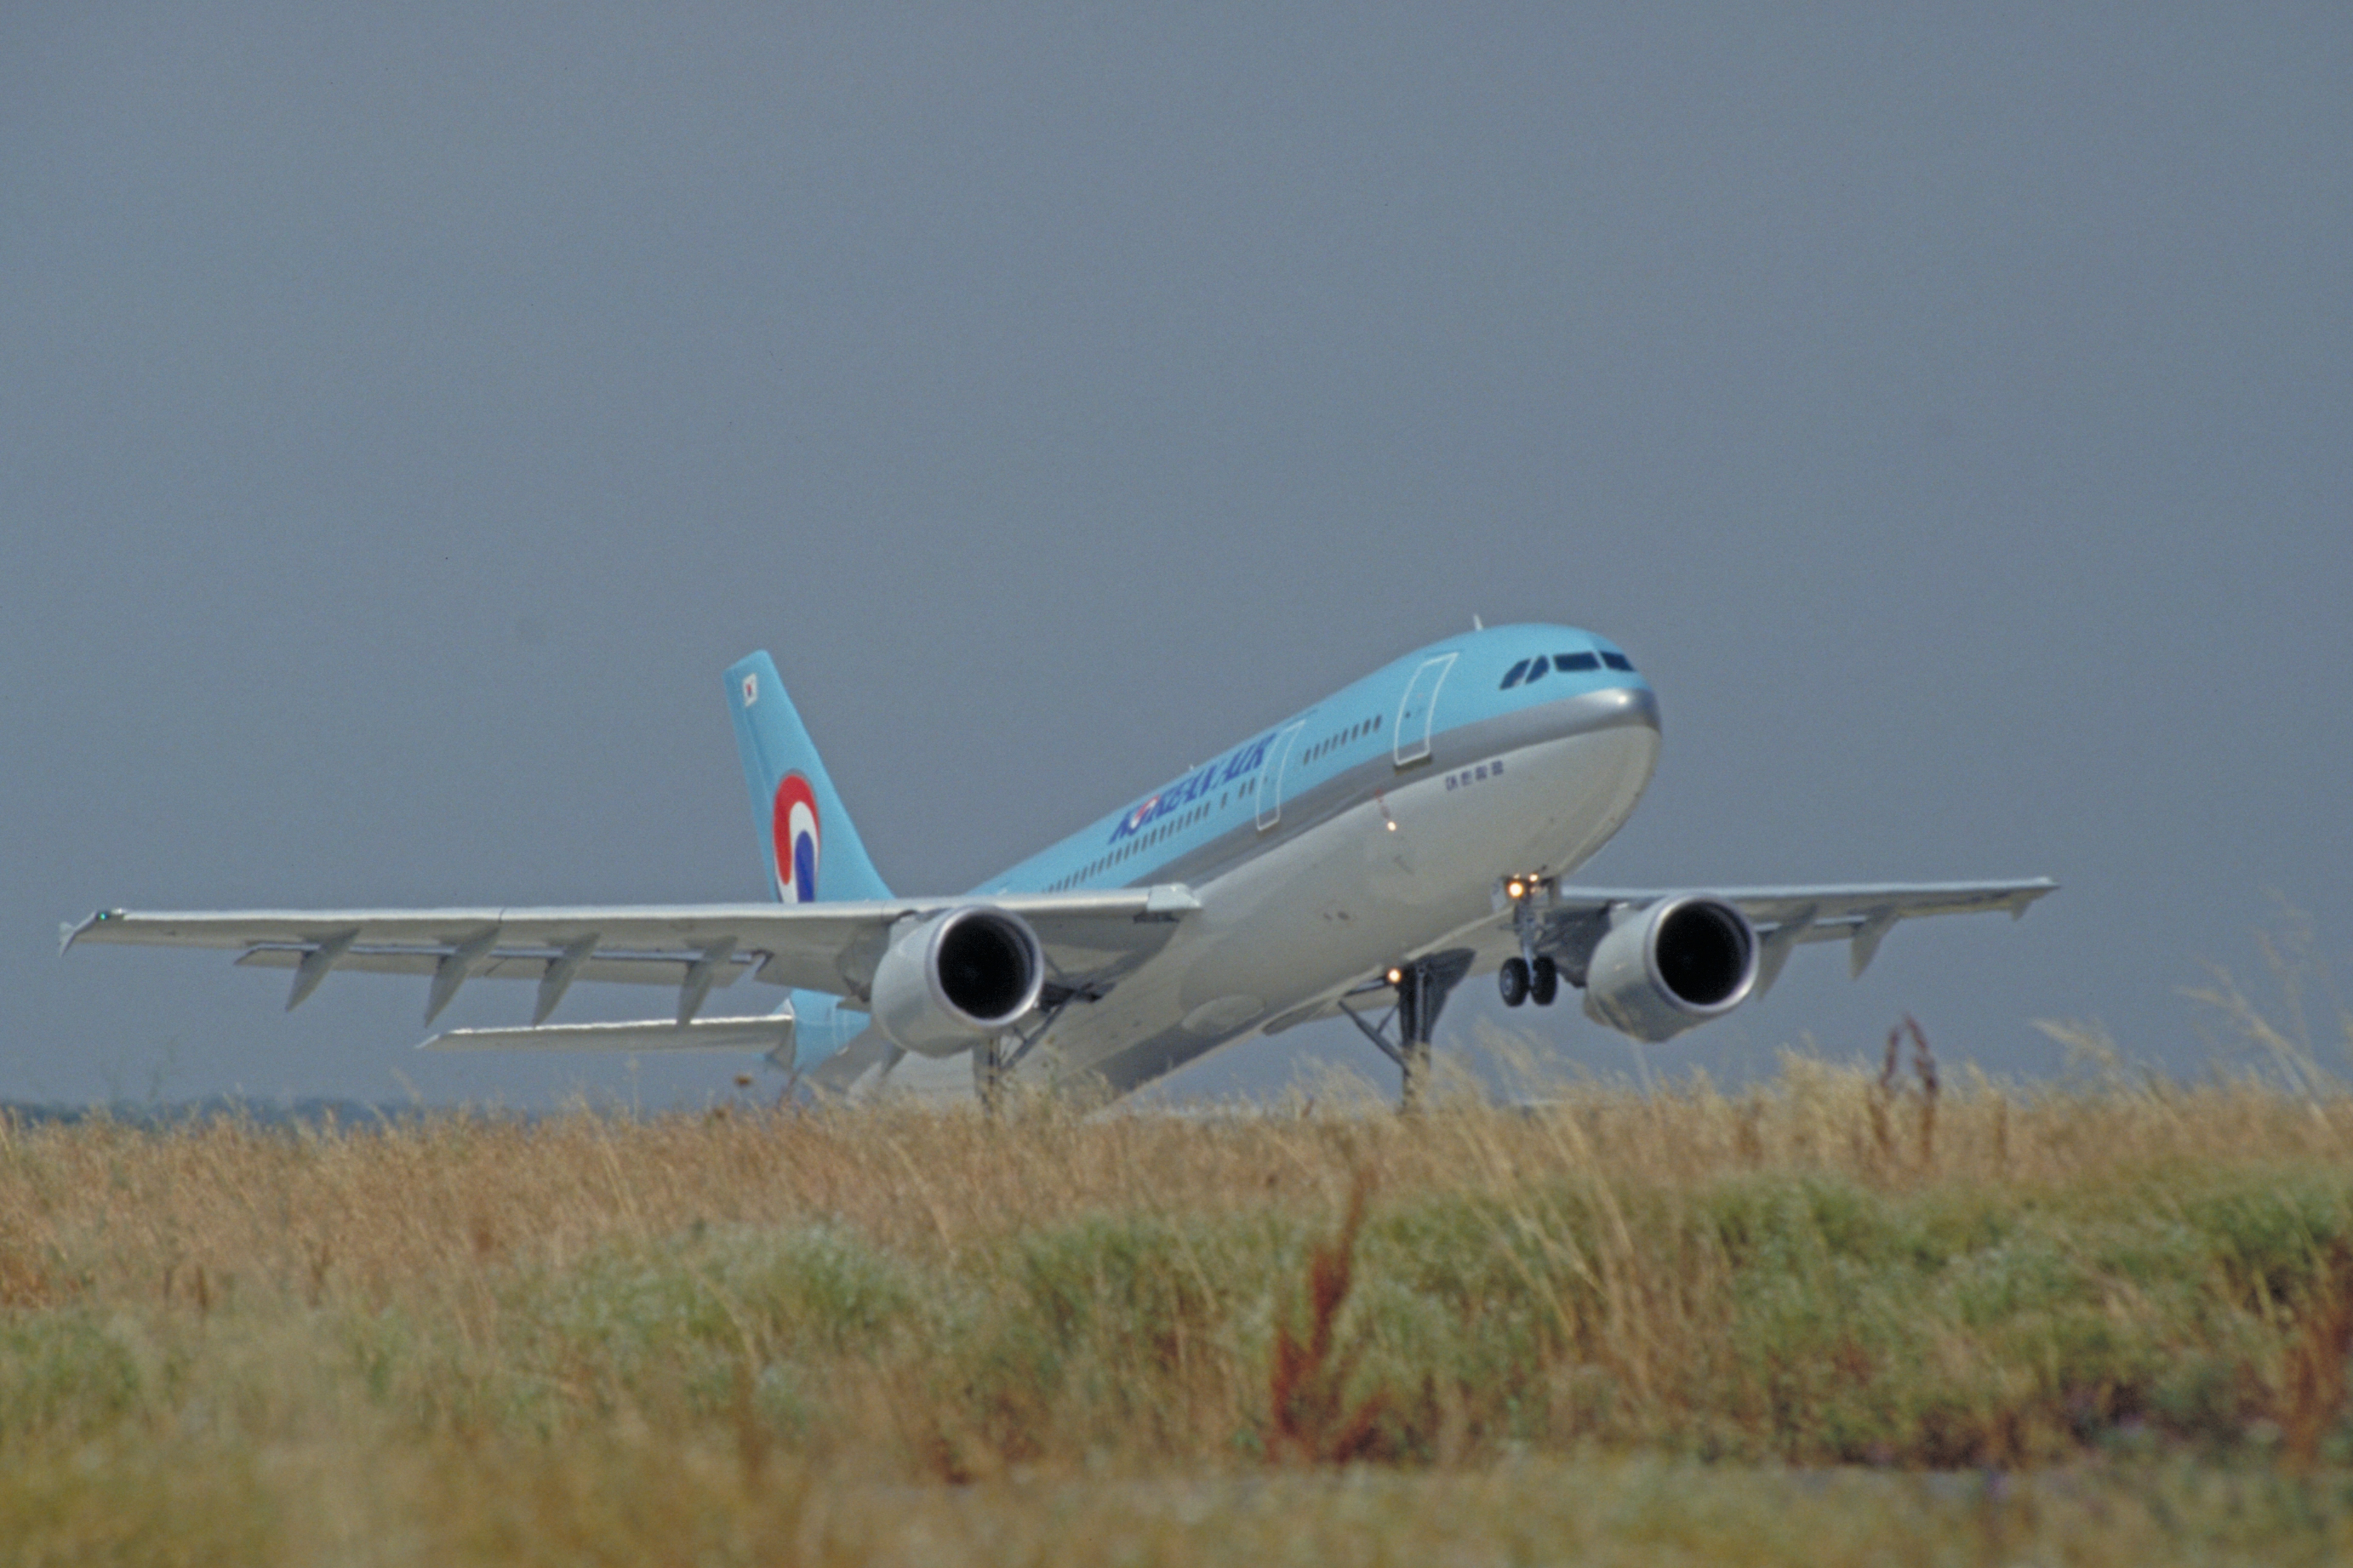 A300-600 KOREAN AIR taking off